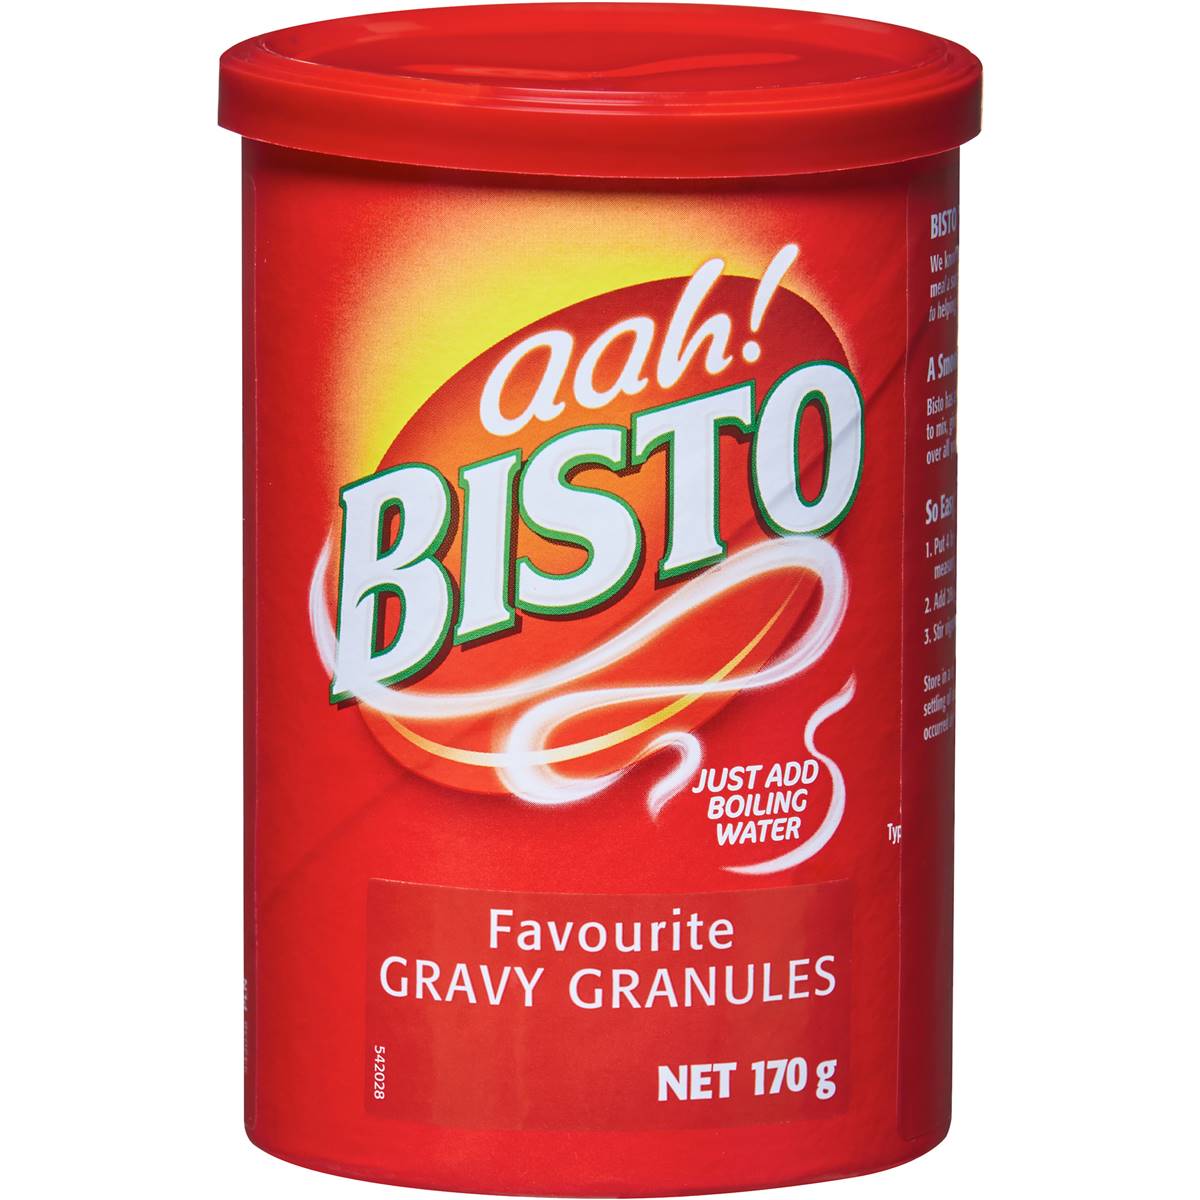 Bisto Original Beef Gravy Granules 170g